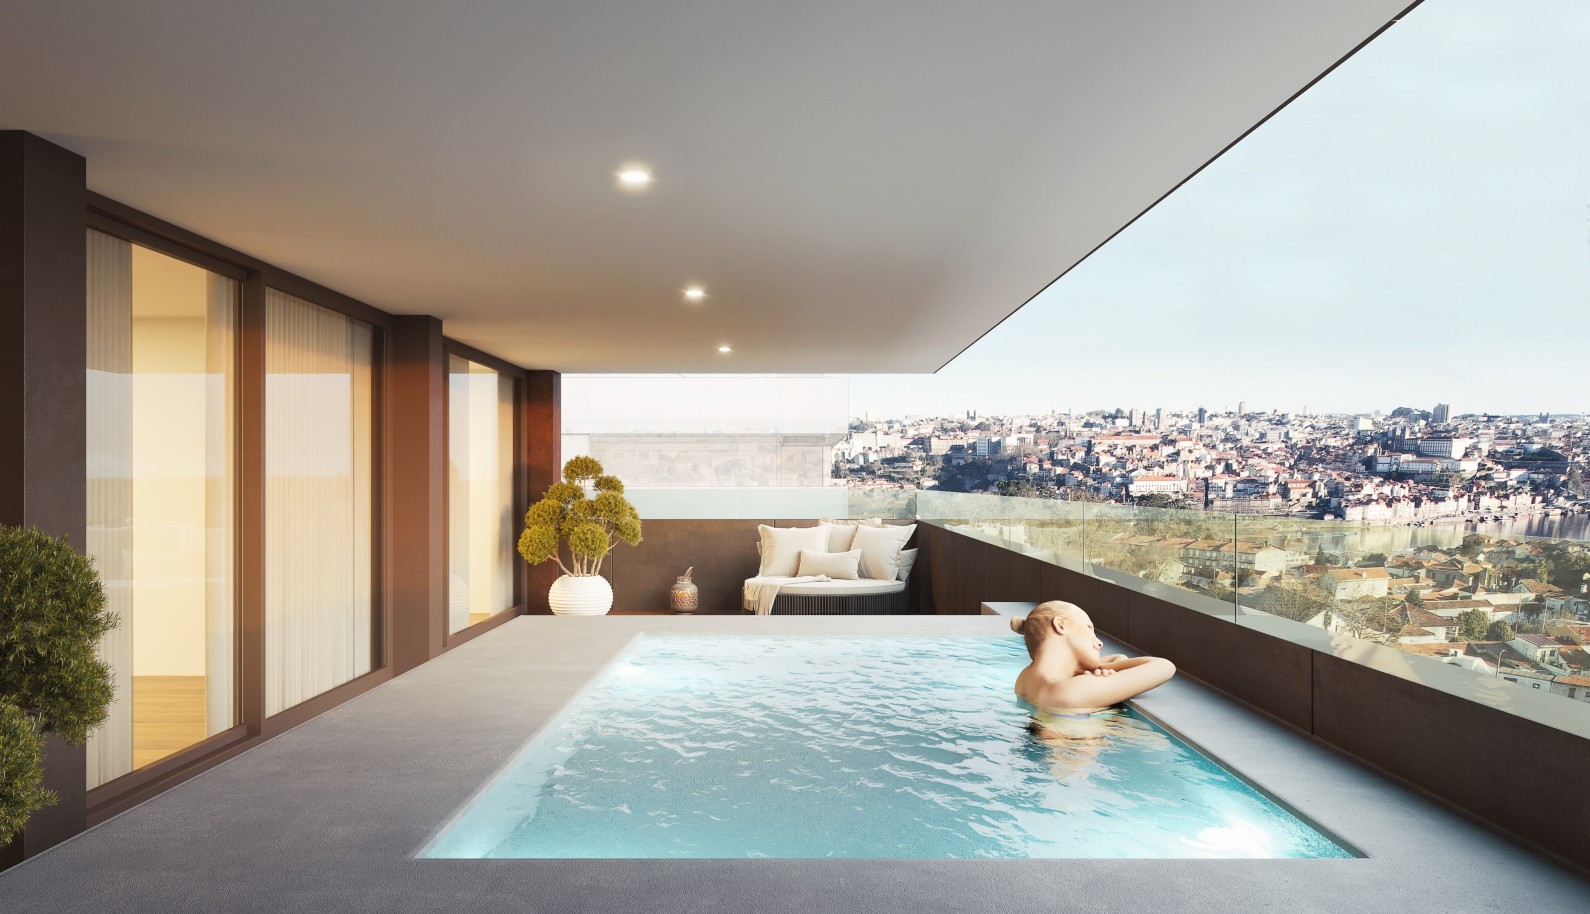 Apartamento novo com piscina, para venda, em V. N. Gaia, Porto, Portugal_234729